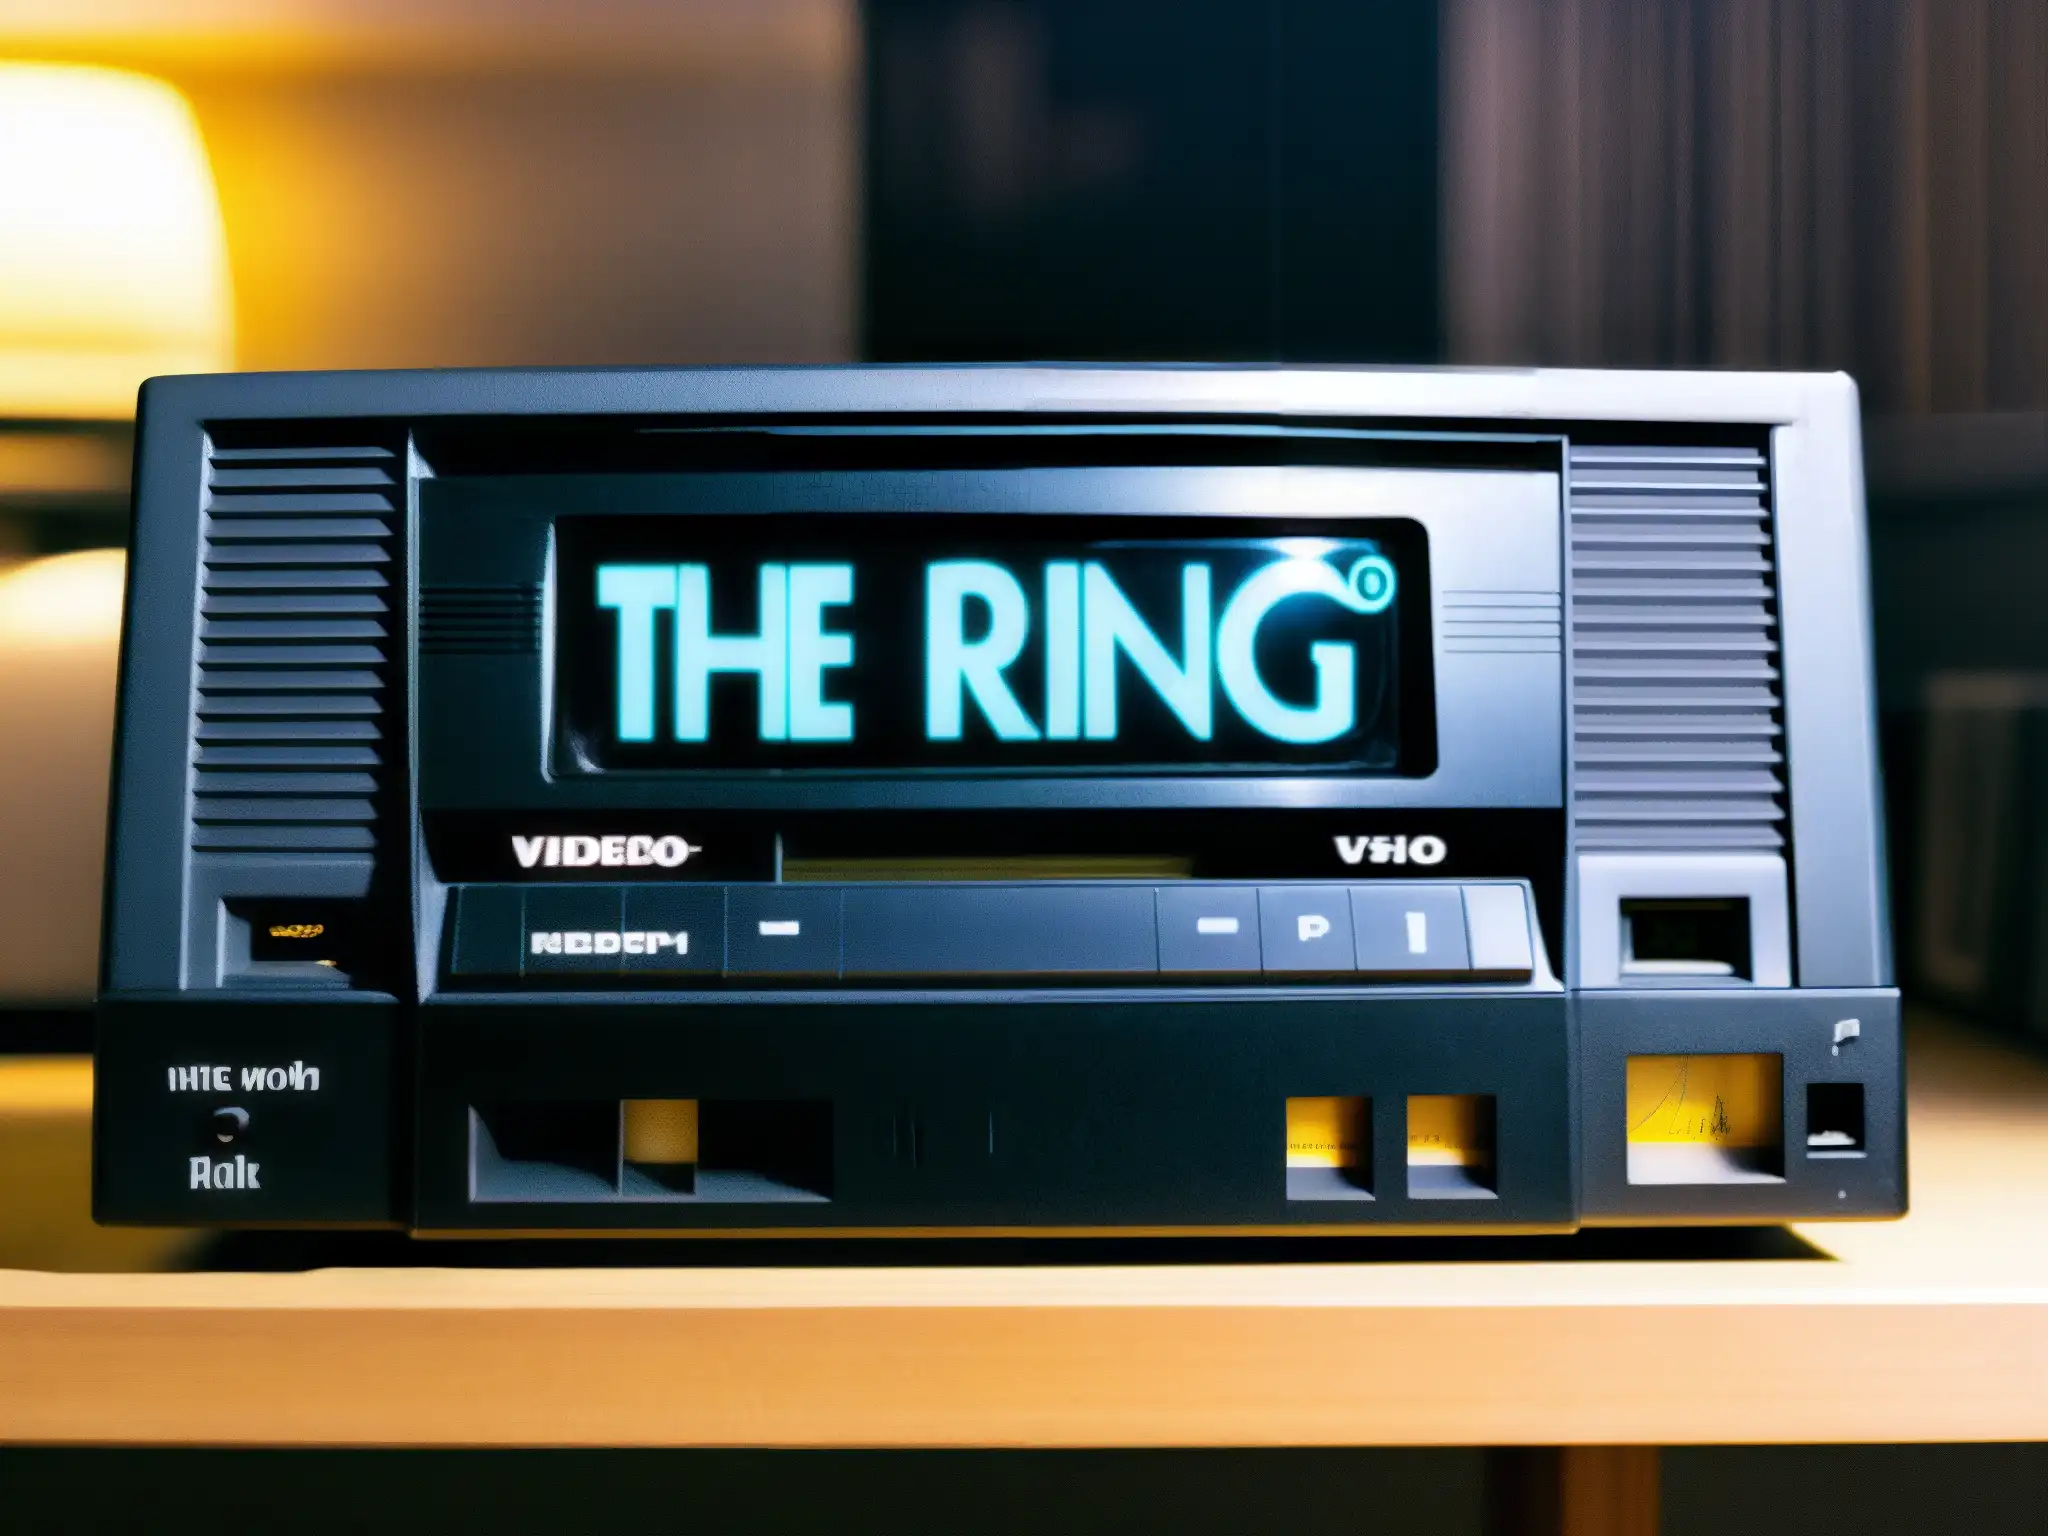 Un VHS desgastado con 'The Ring' escrito a mano, insertado en un VCR vintage